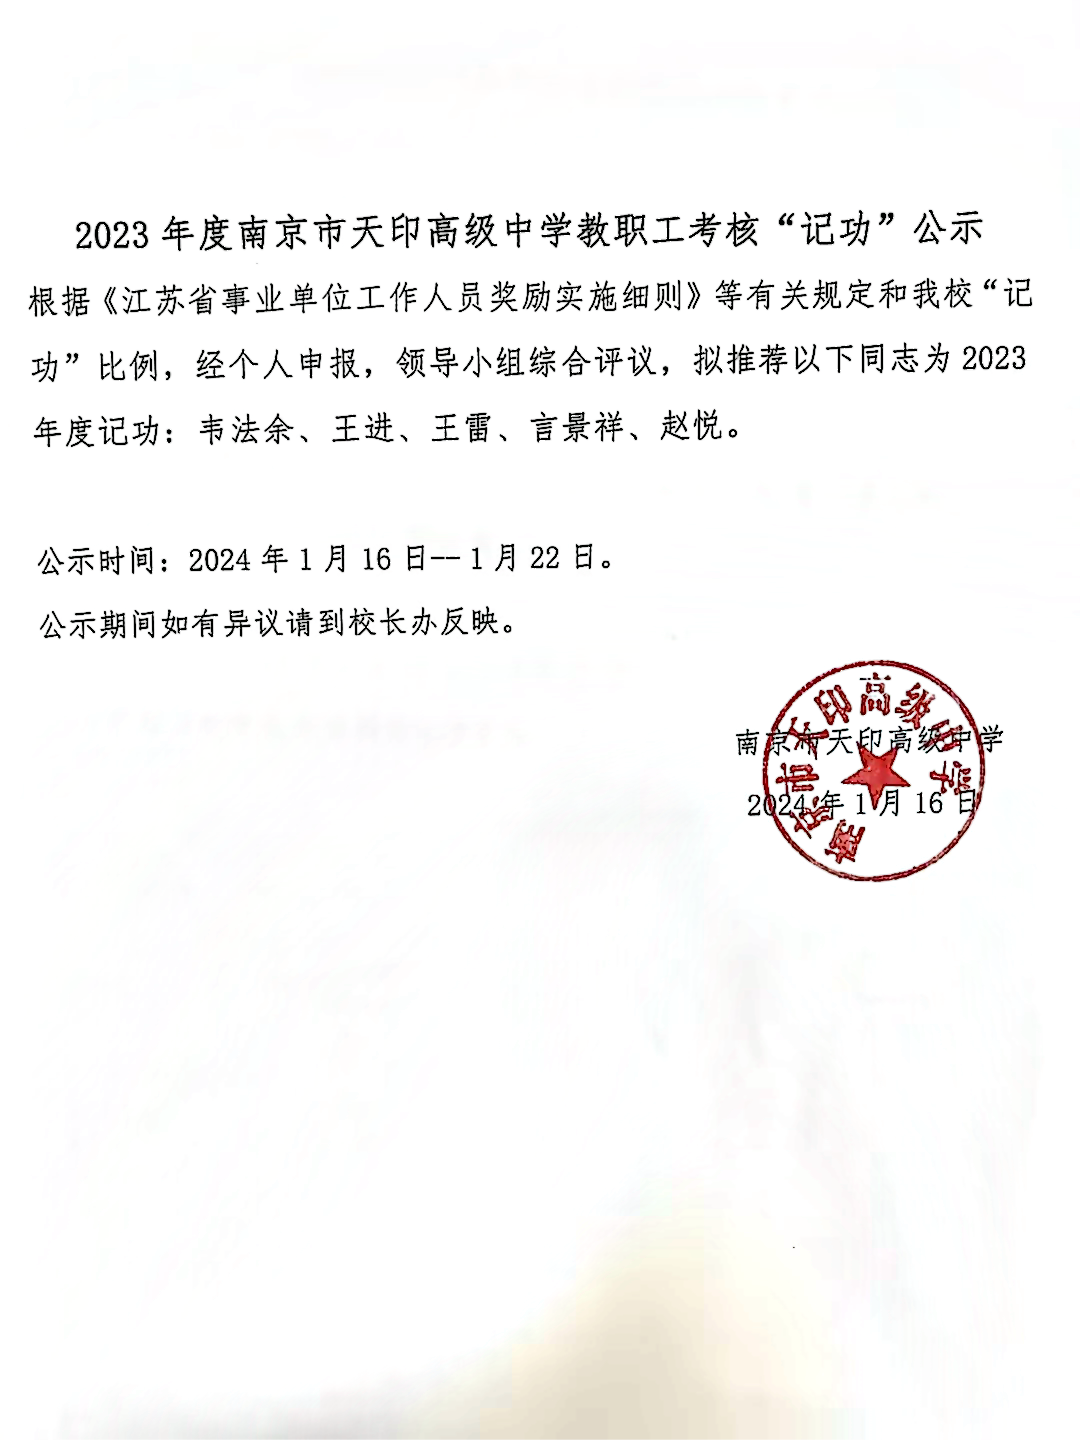 2023年度南京市天印高级中学教职工考核“记功”公示(1)(1).png